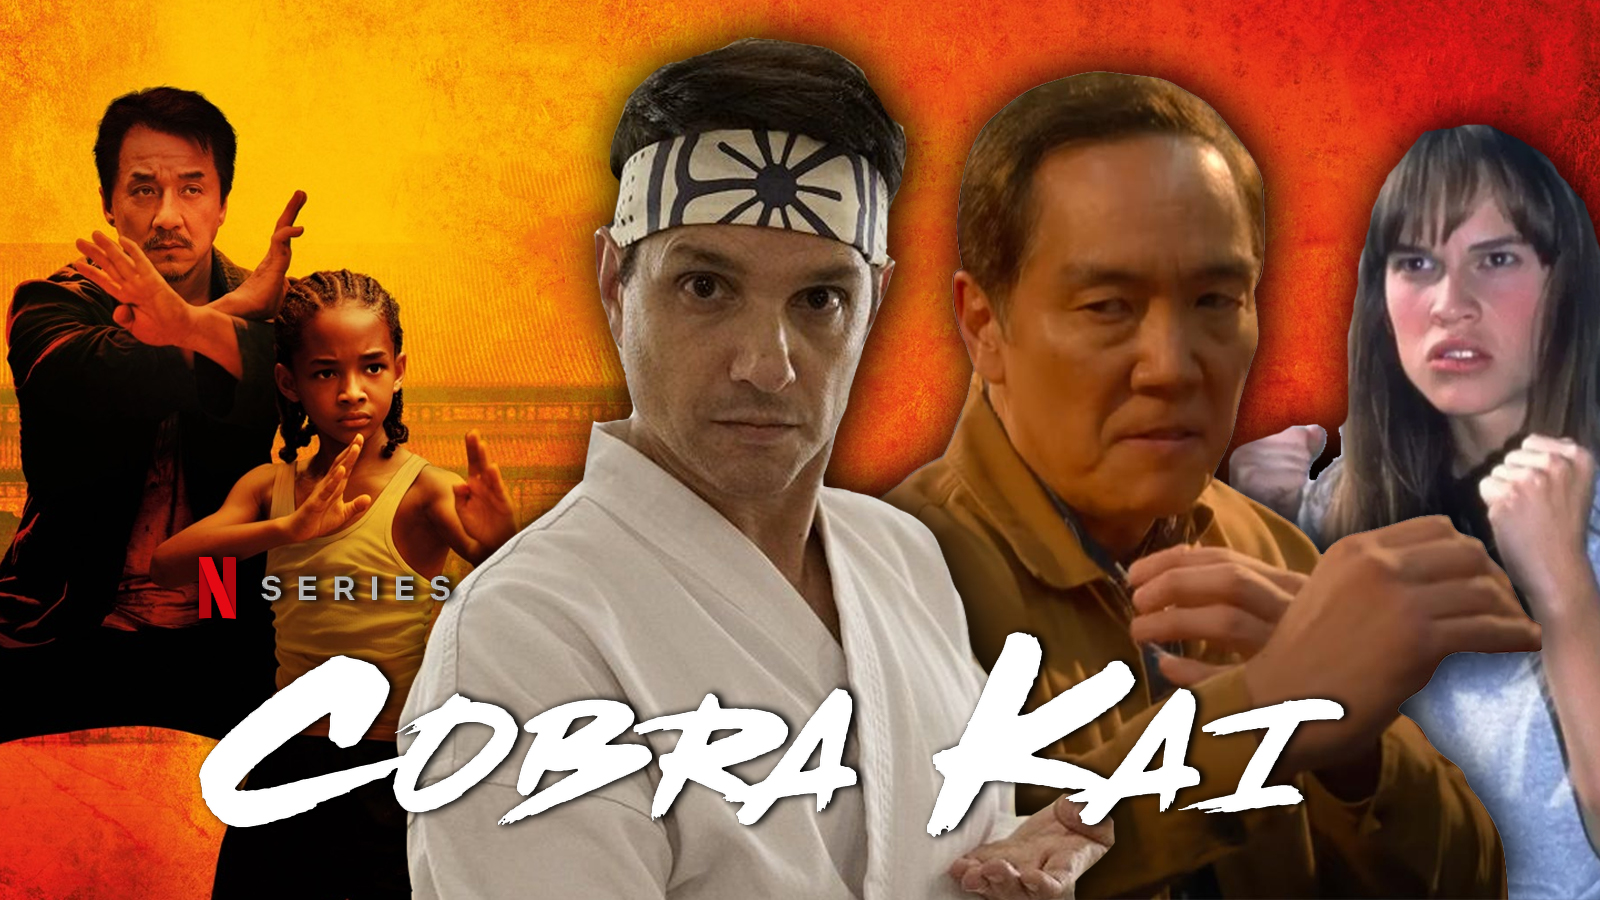 Cobra Kai Season 5: New Fan Favorite Characters We Root For More